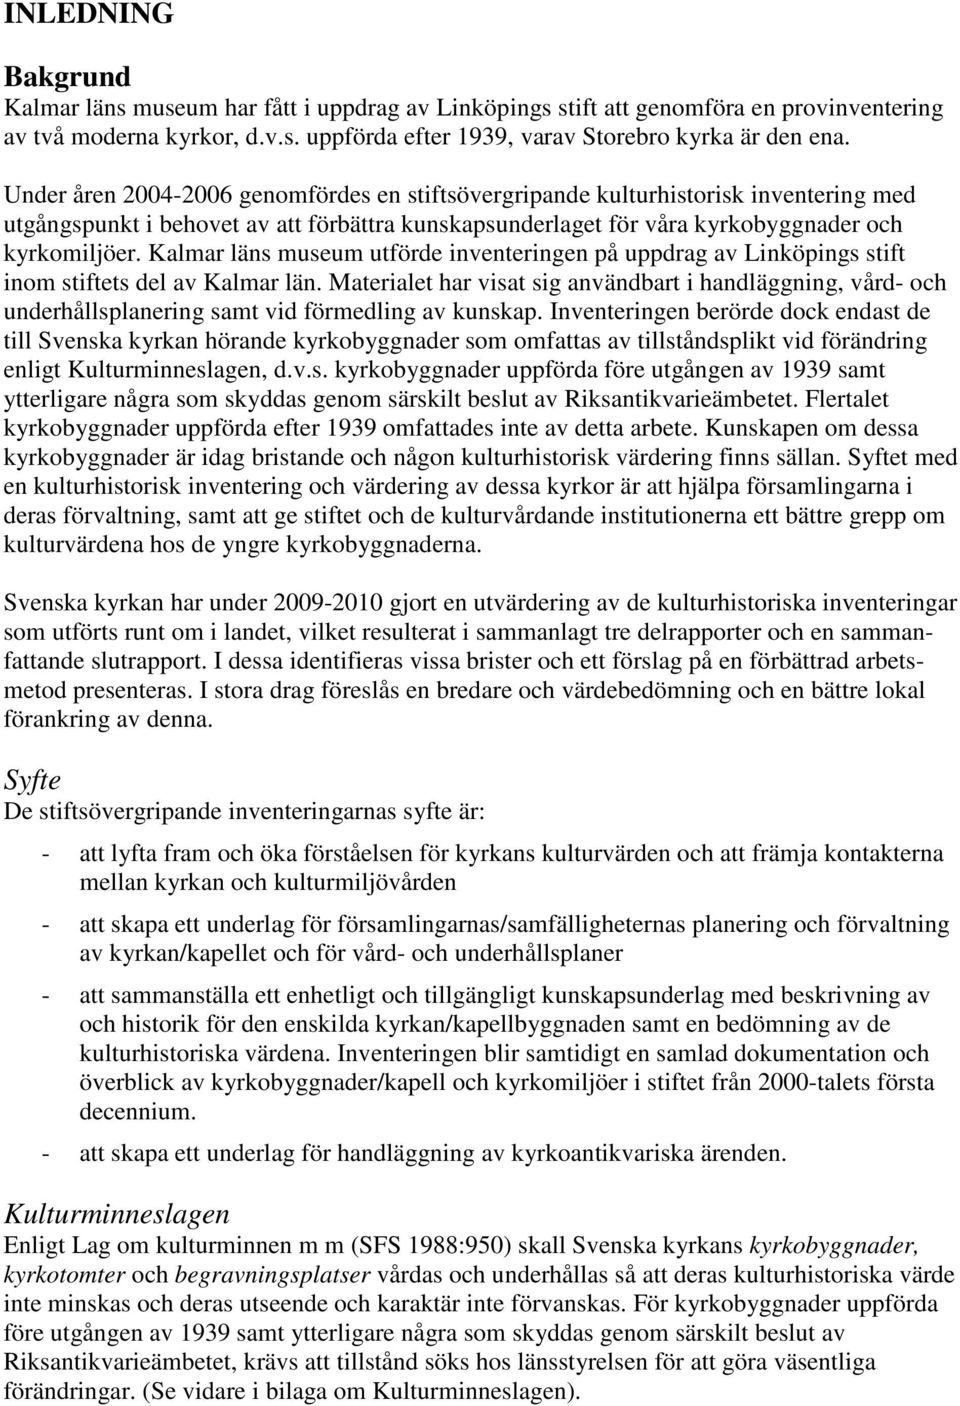 Kalmar läns museum utförde inventeringen på uppdrag av Linköpings stift inom stiftets del av Kalmar län.